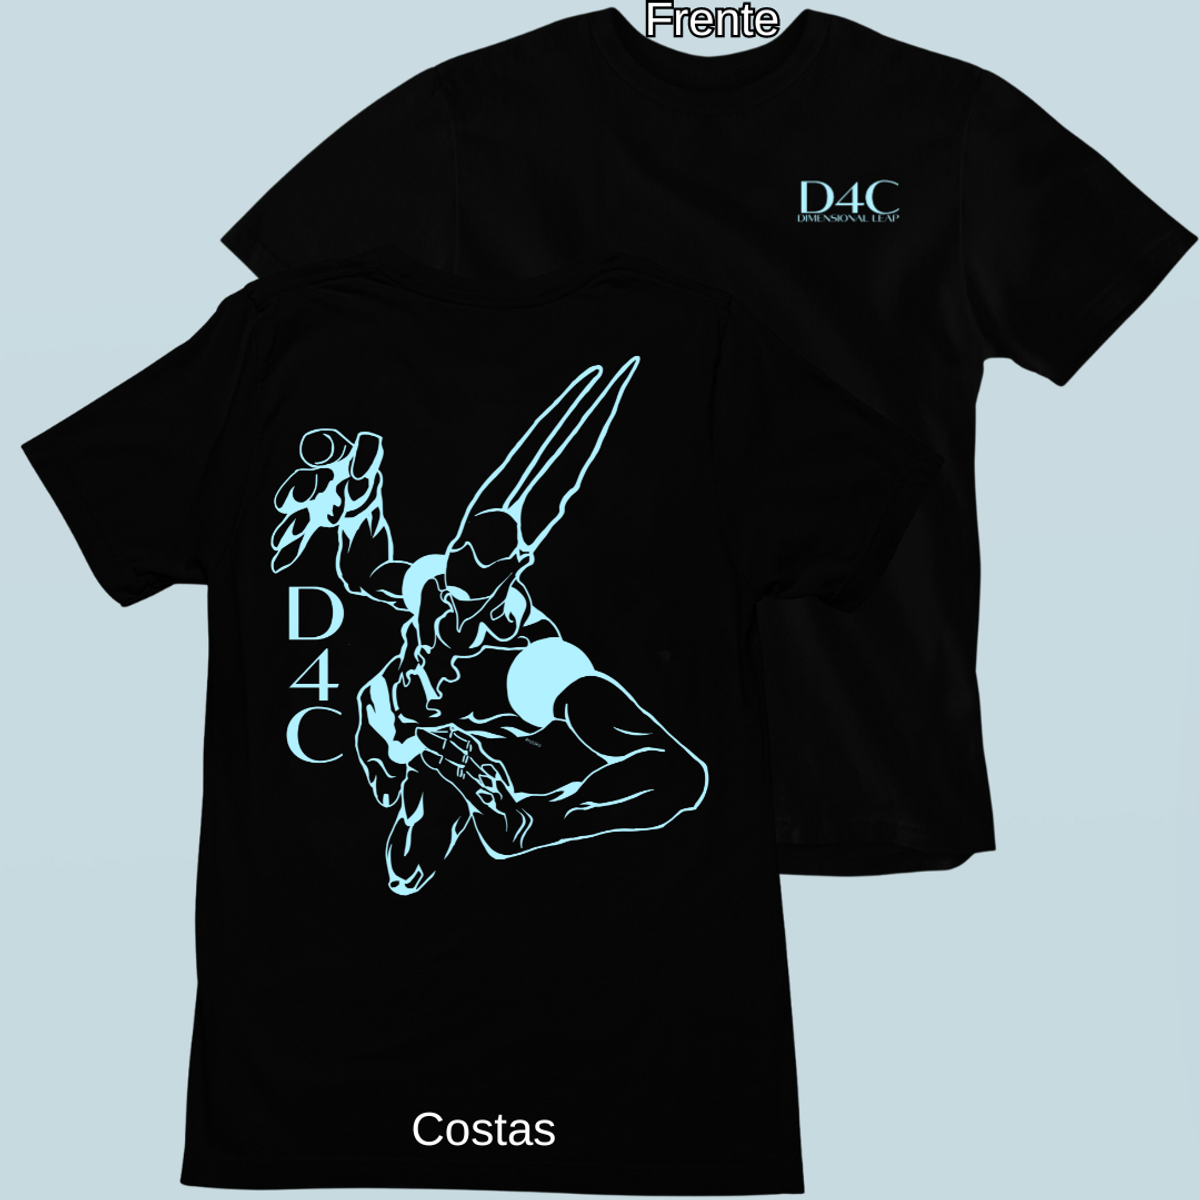 Nome do produto: Camiseta D4C Frente Costa